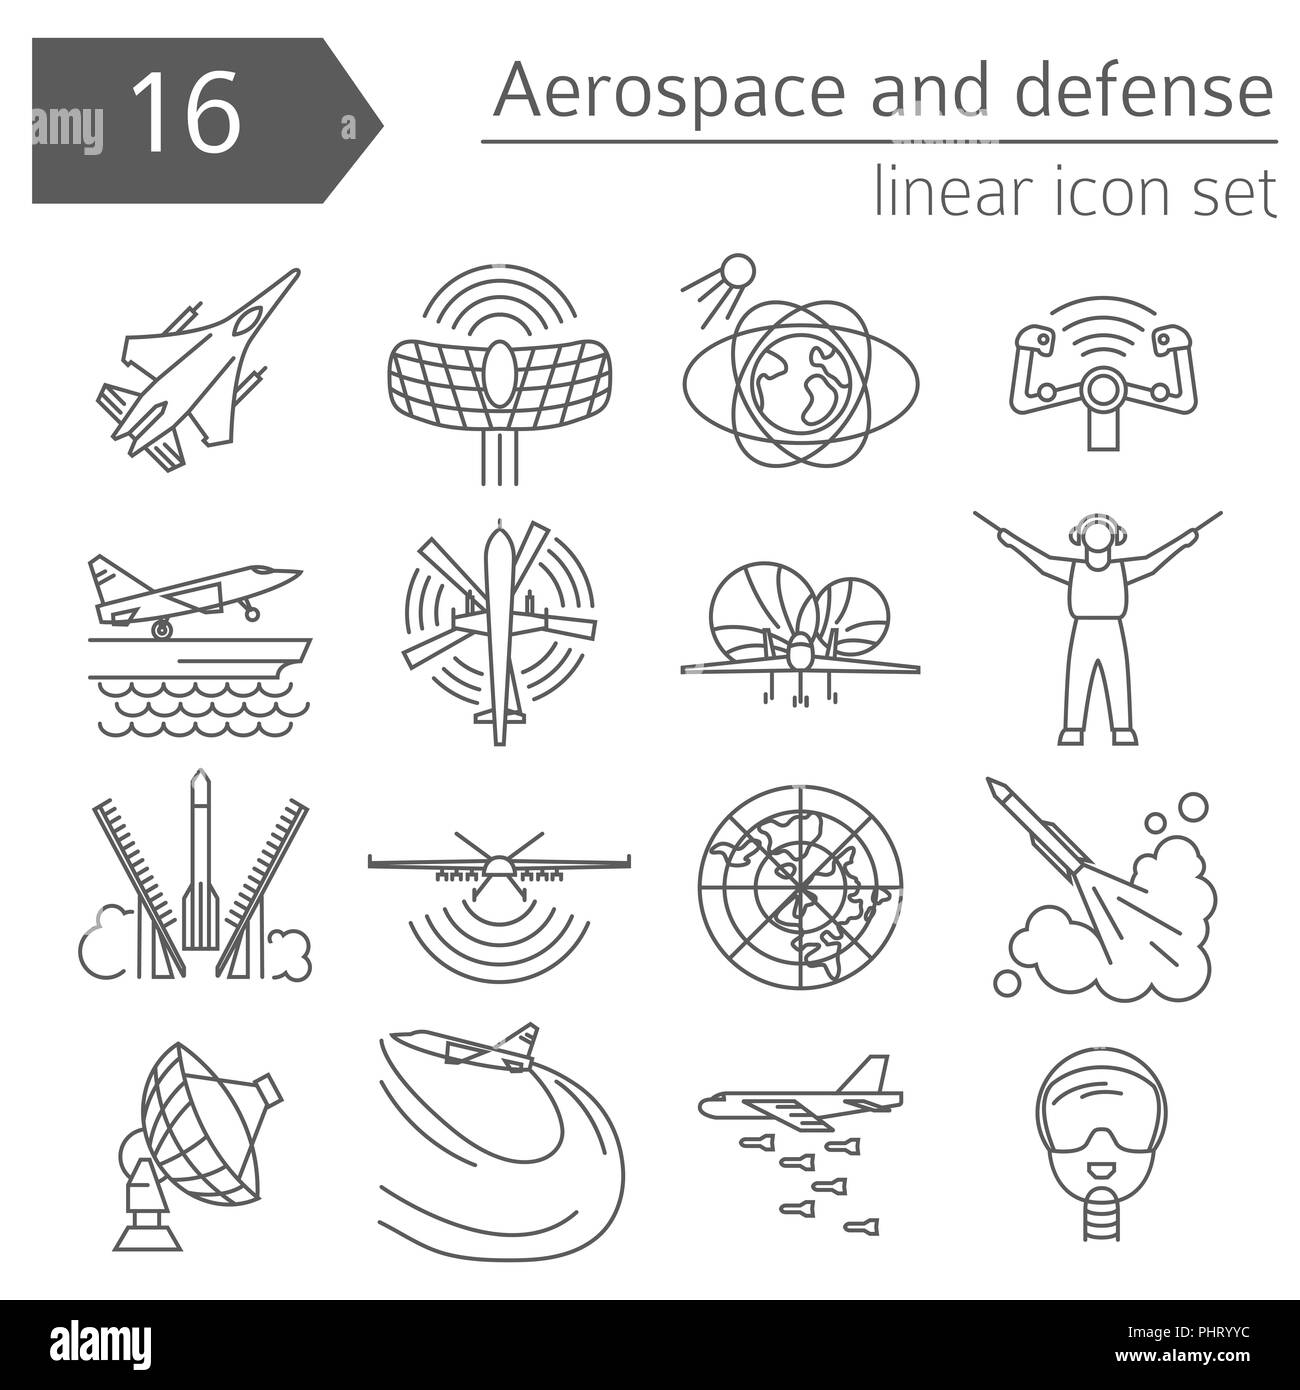 Luft- und Raumfahrt, Verteidigung, militärische Flugzeuge Icon Set. Thin Line Design für die Erstellung von Infografiken. Vector Illustration Stock Vektor